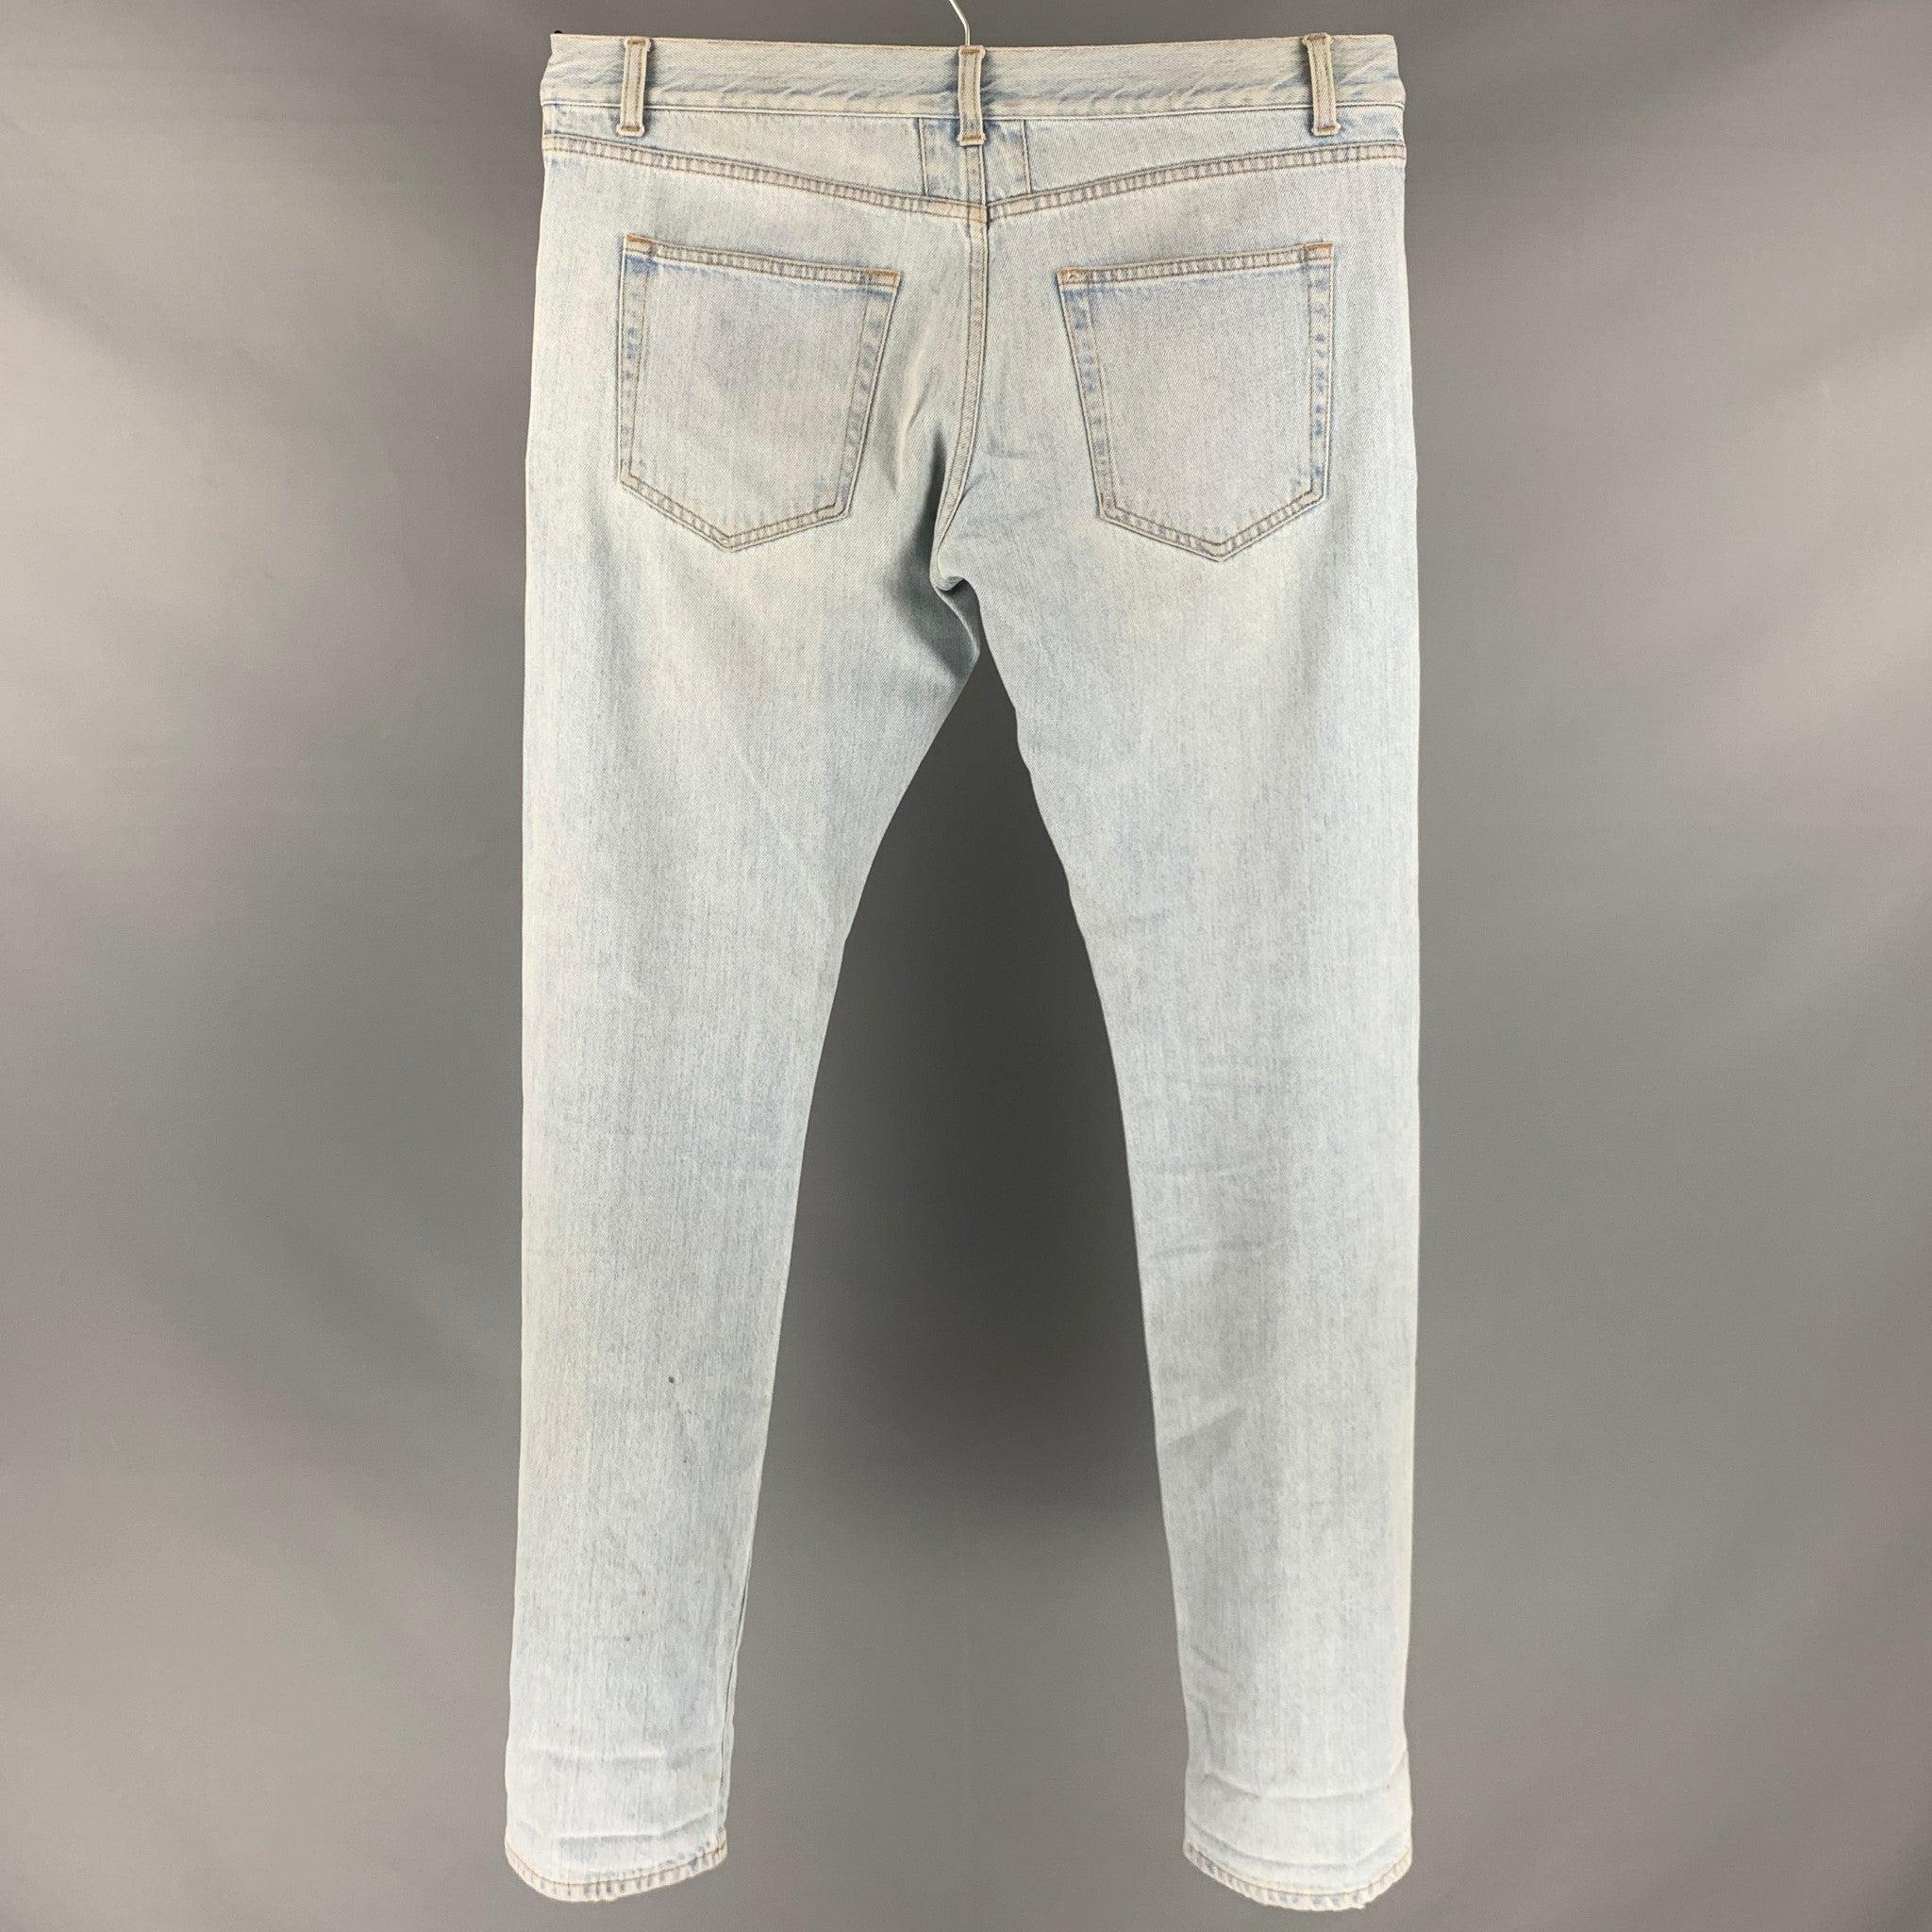 SAINT LAURENT Jeans aus hellblauem Baumwollgewebe mit normaler Passform, Kontrastnähten und Knopfverschluss. Hergestellt in Italien. Guter Pre-Owned Zustand. Mäßige Gebrauchsspuren. 

Markiert:   Größe nicht markiert 

Abmessungen: 
  Taille: 33